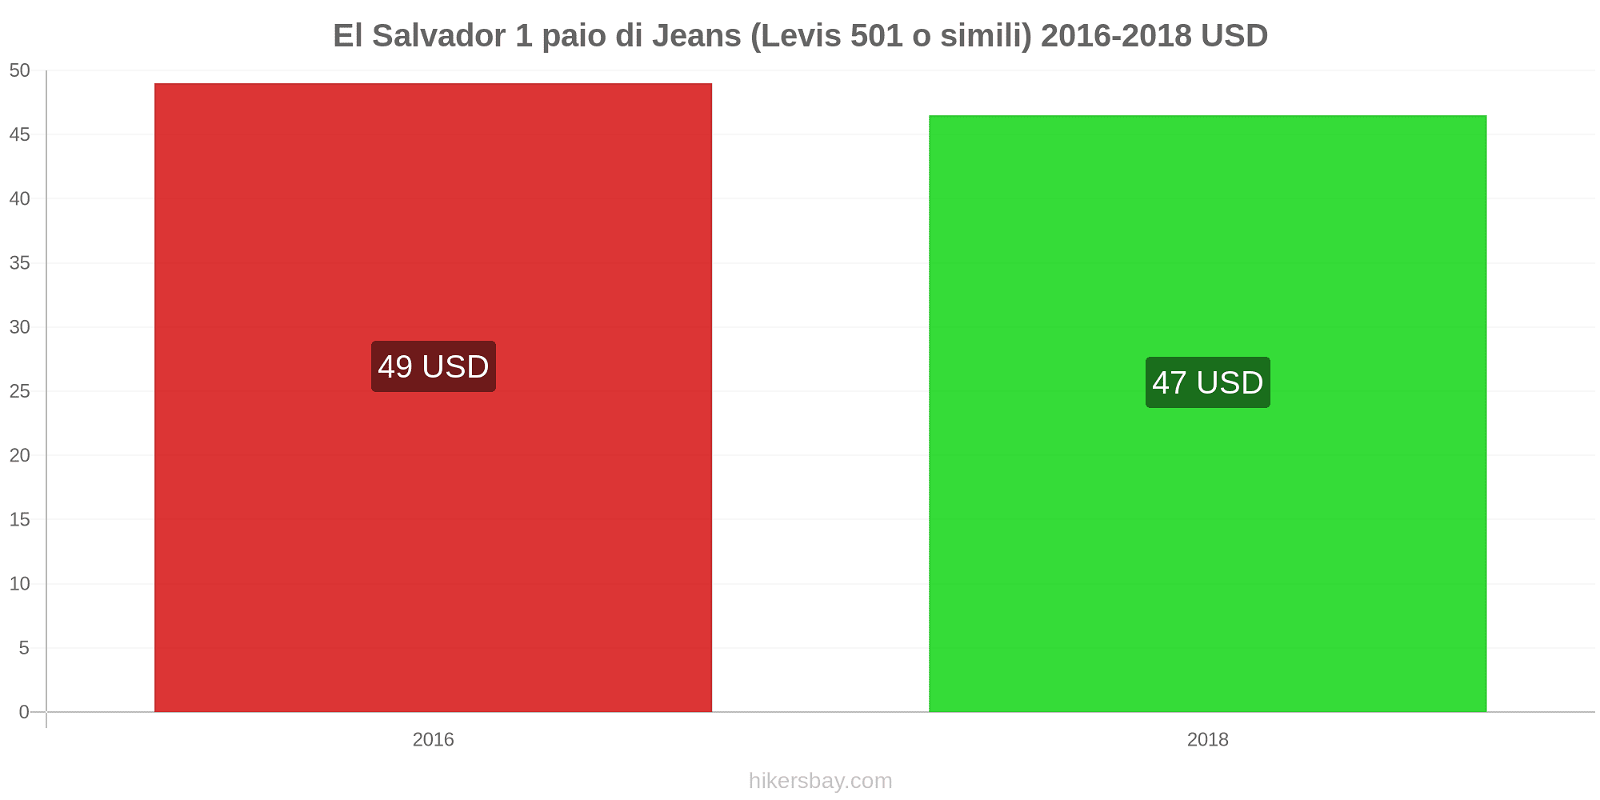 El Salvador cambi di prezzo 1 paio di jeans (Levis 501 o simili) hikersbay.com